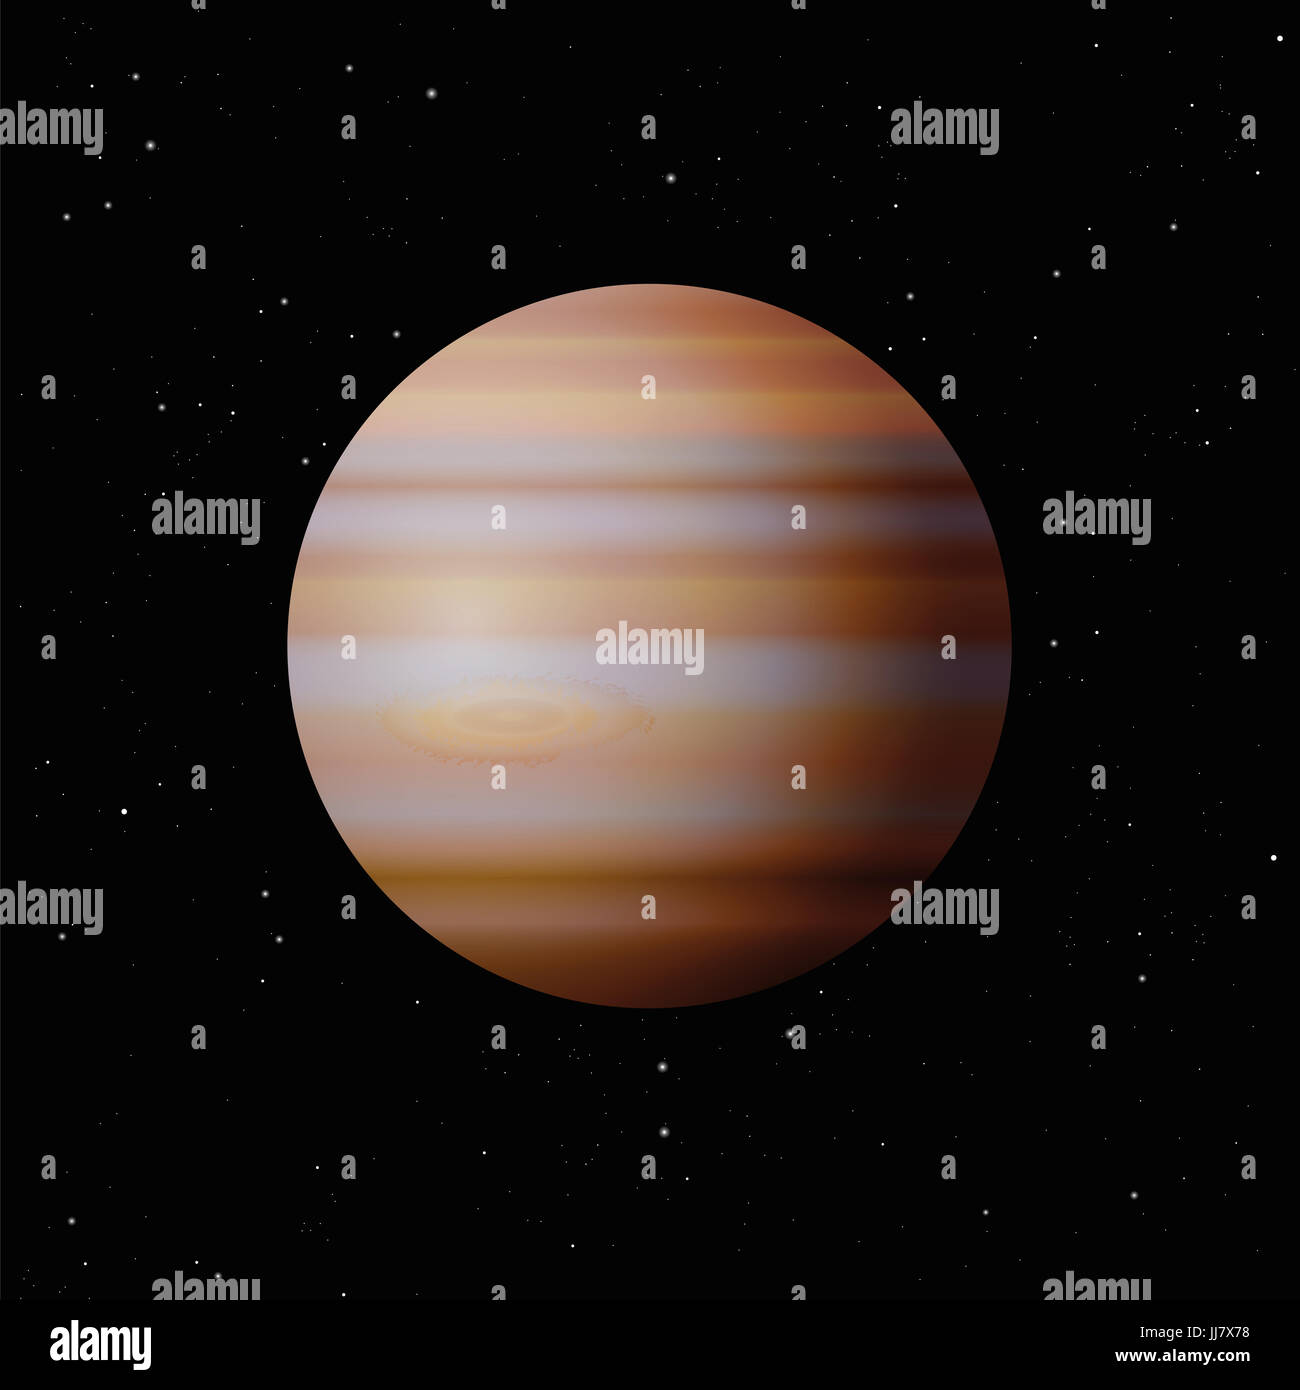 Planeten Jupiter mit typischen großen Spot - größte Planet in unserem Sonnensystem - Illustration auf Sternennacht Galaxie schwarzen Hintergrund. Stockfoto